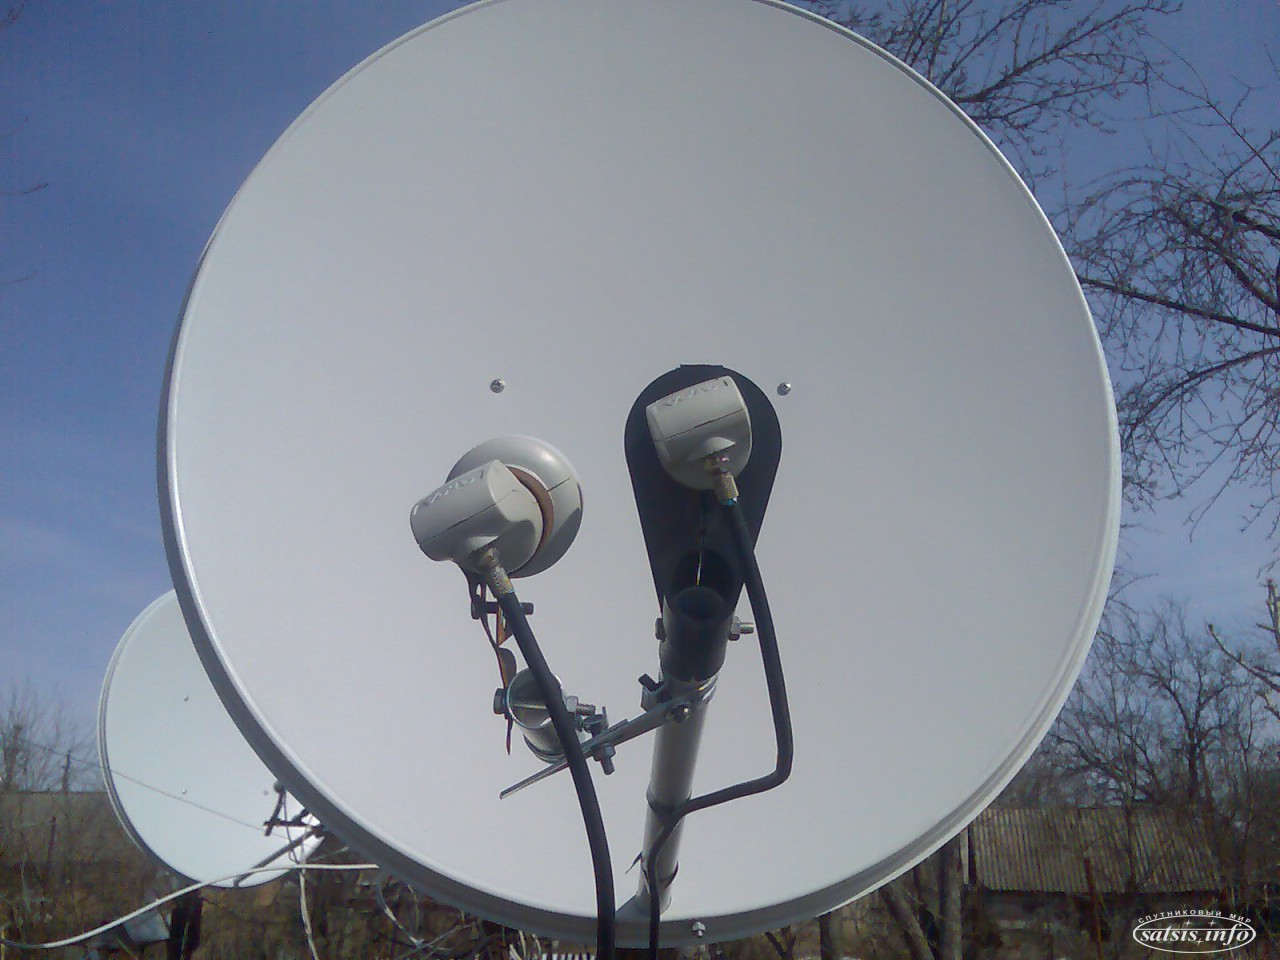 Новости спутникового телевидения на сегодня. ABS 2/2a 75e. Eutelsat 36e Триколор. Транспондерные данные Телеспутника 75 е. Express 80 at 80.0°e.